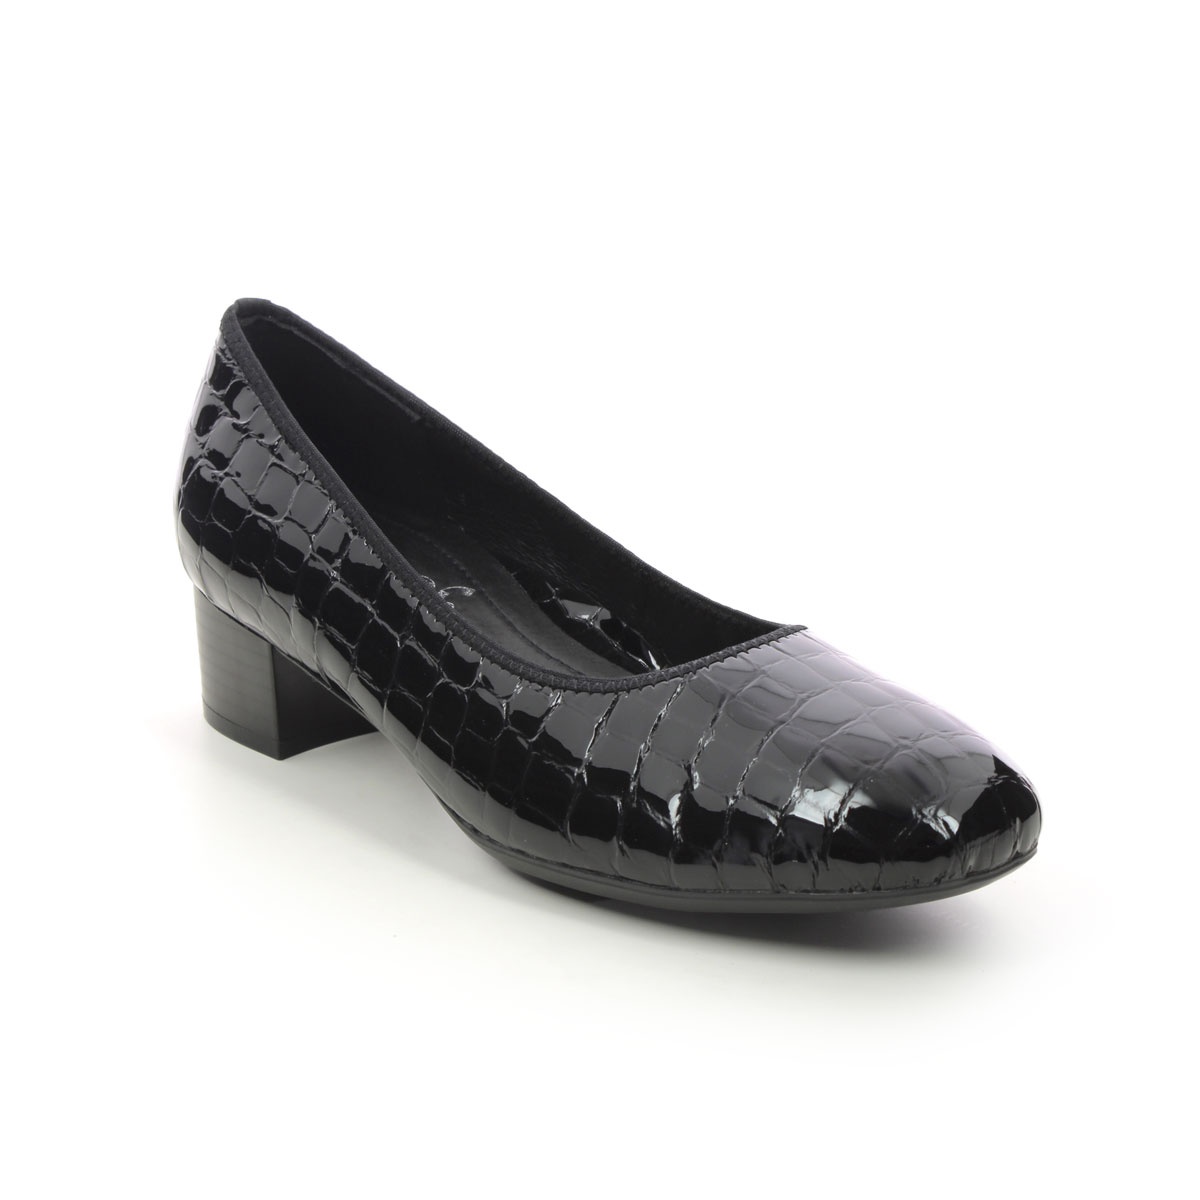 Rieker Develop Graco Black Croc Womens Court Shoes 49260-02 In Size 39 In Plain Black Croc Effect